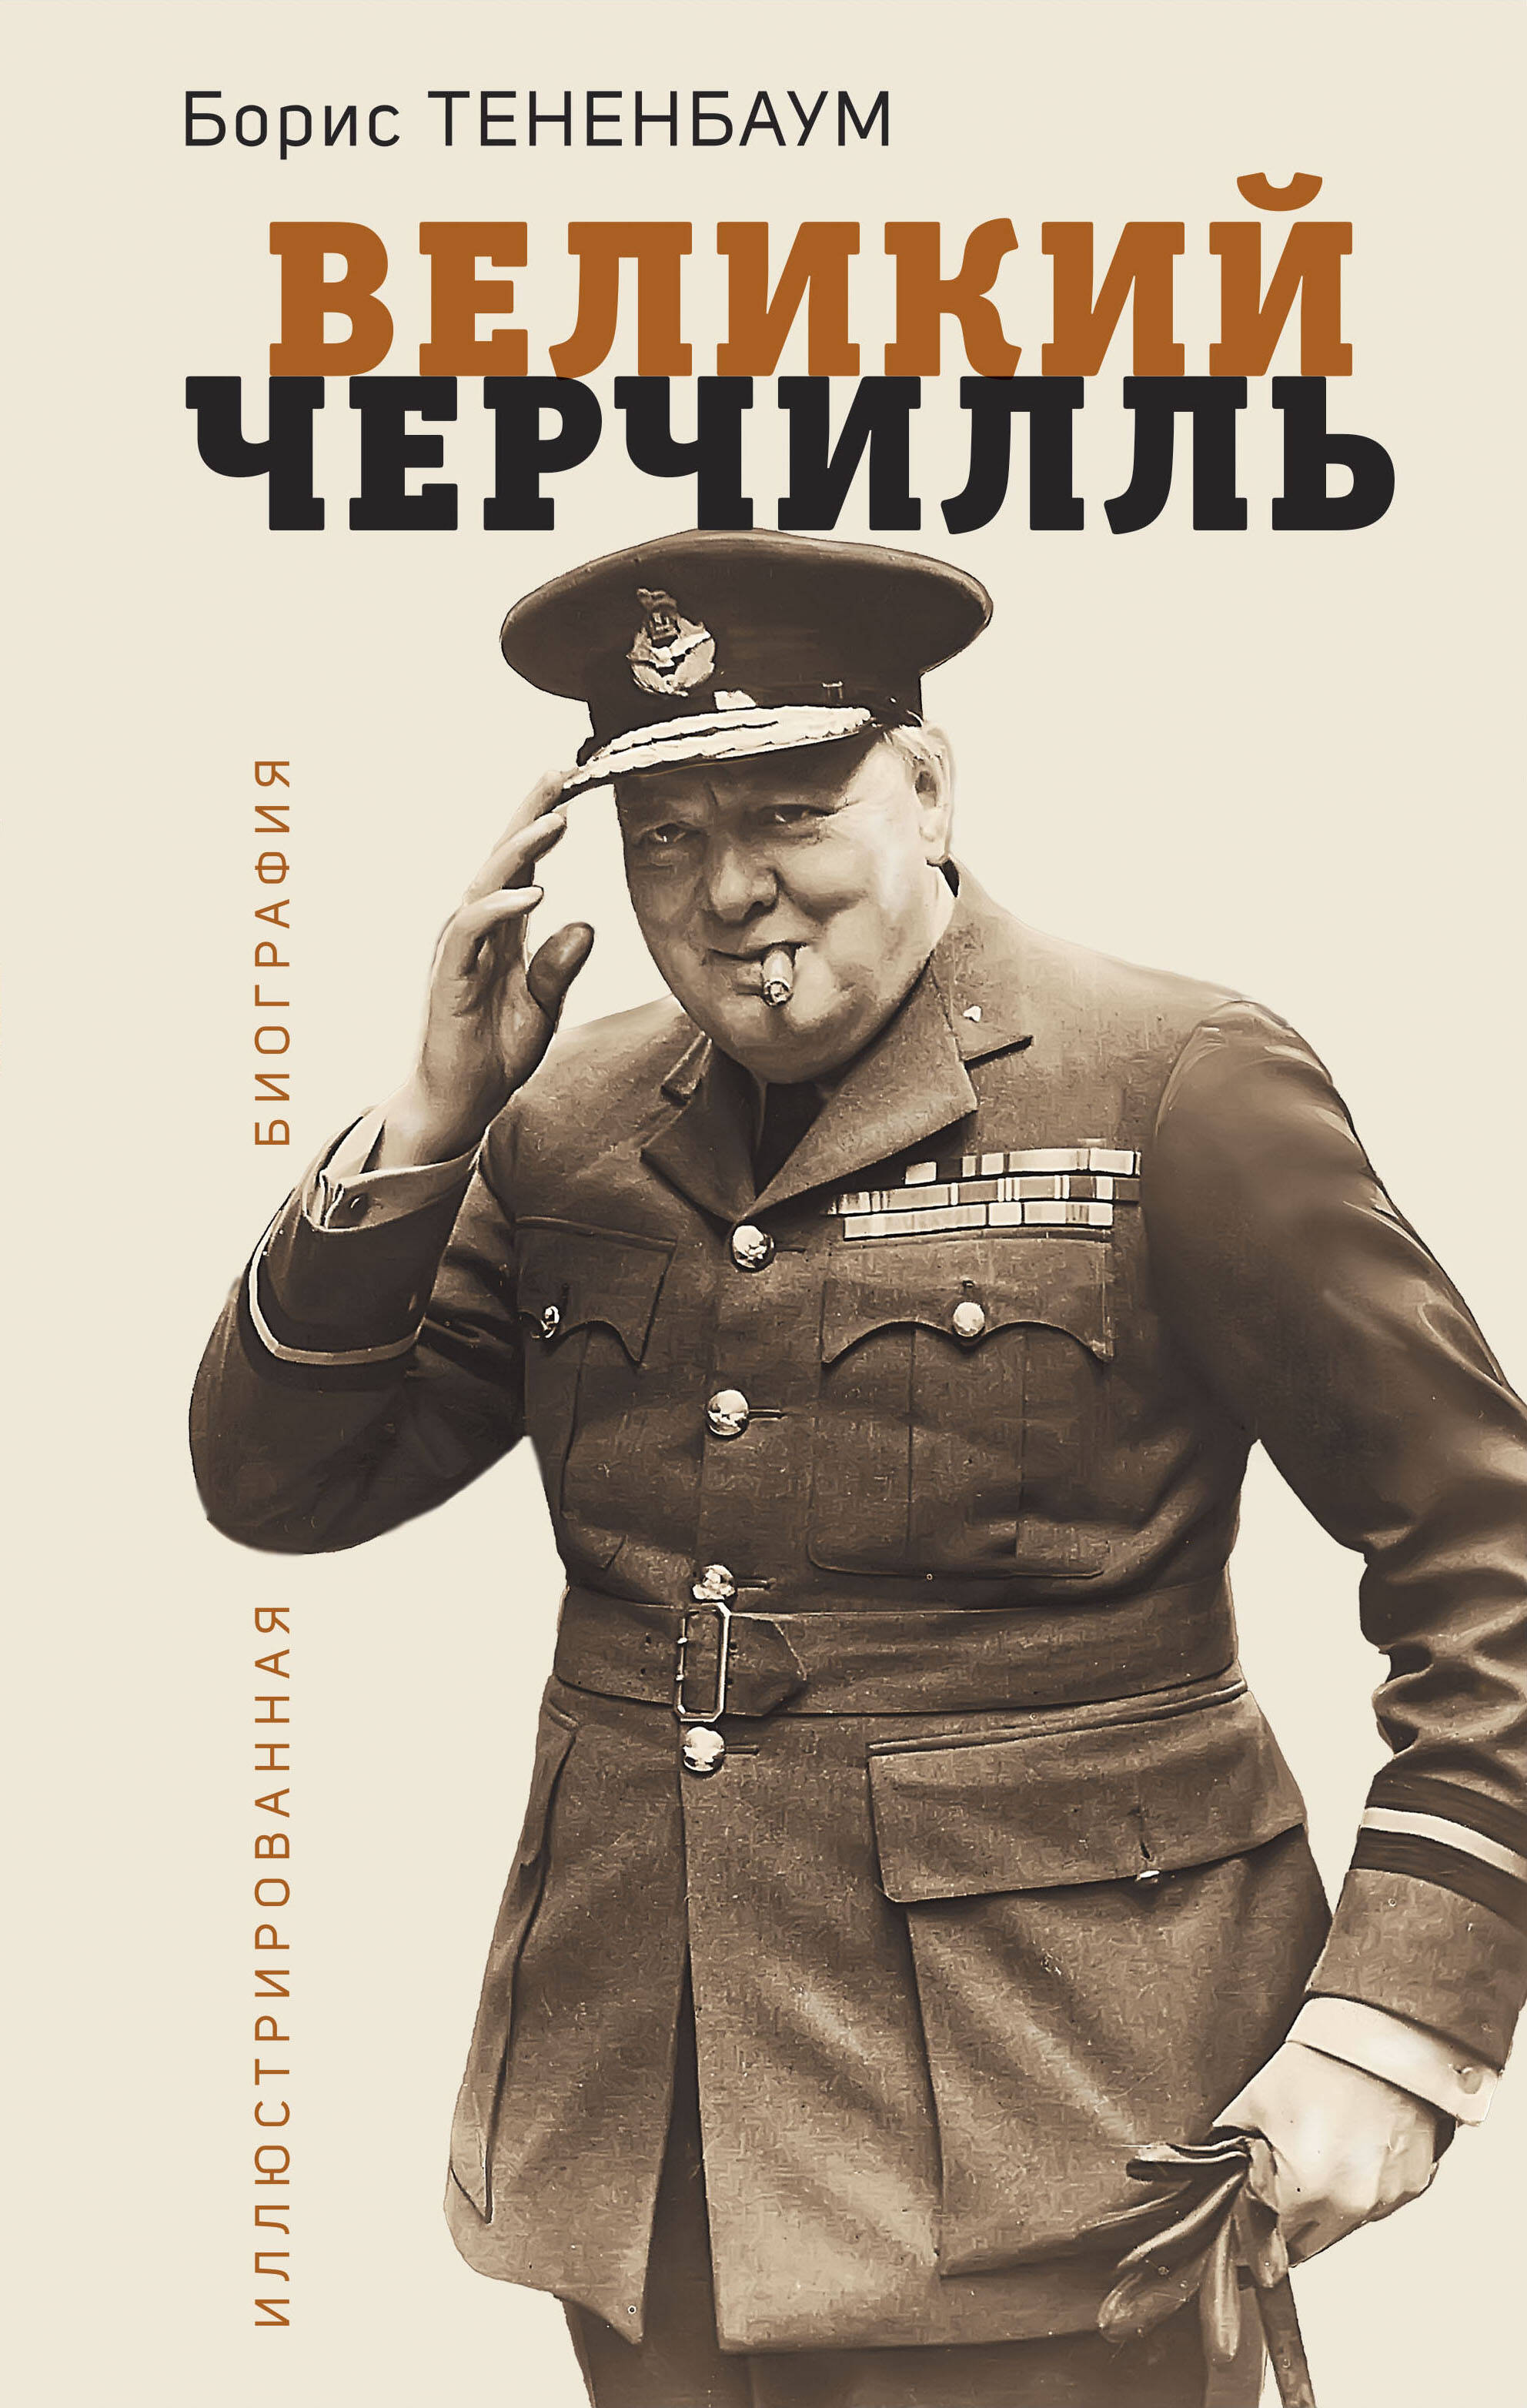 цена Тененбаум Борис Великий Черчилль. Иллюстрированная биография